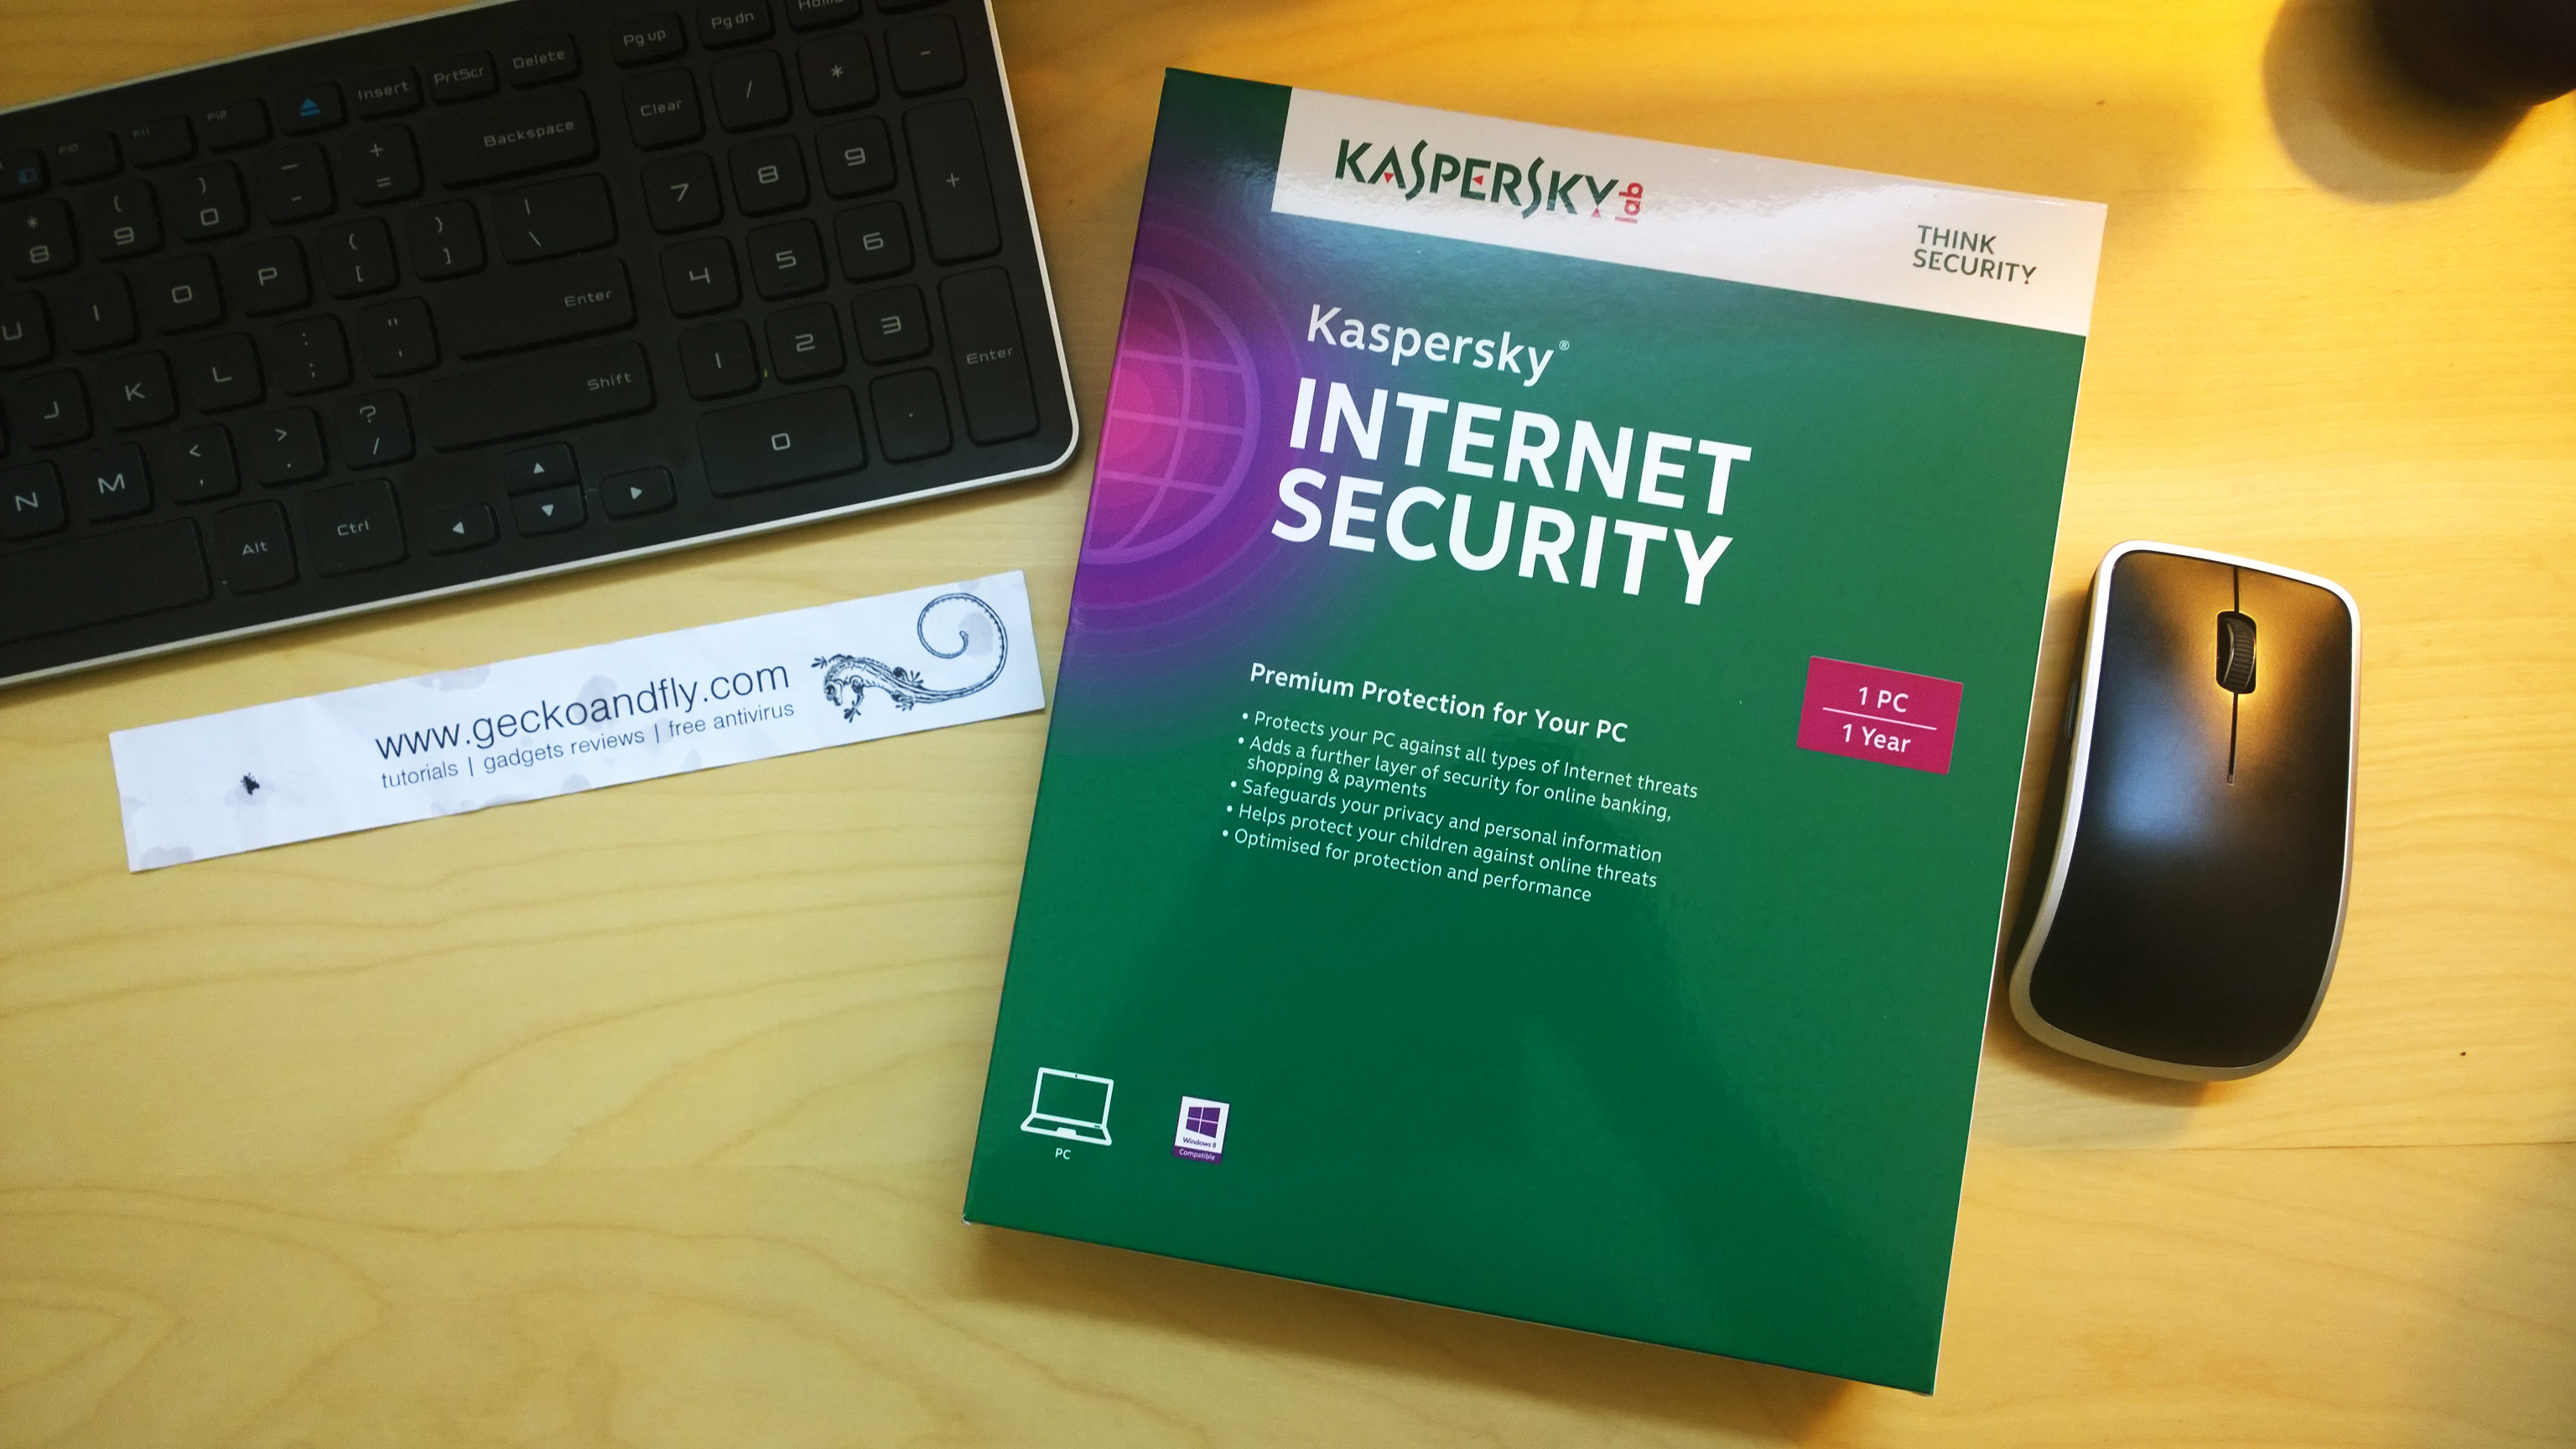 4. Kaspersky VPN Activation Code - Kaspersky Internet Security - wide 5